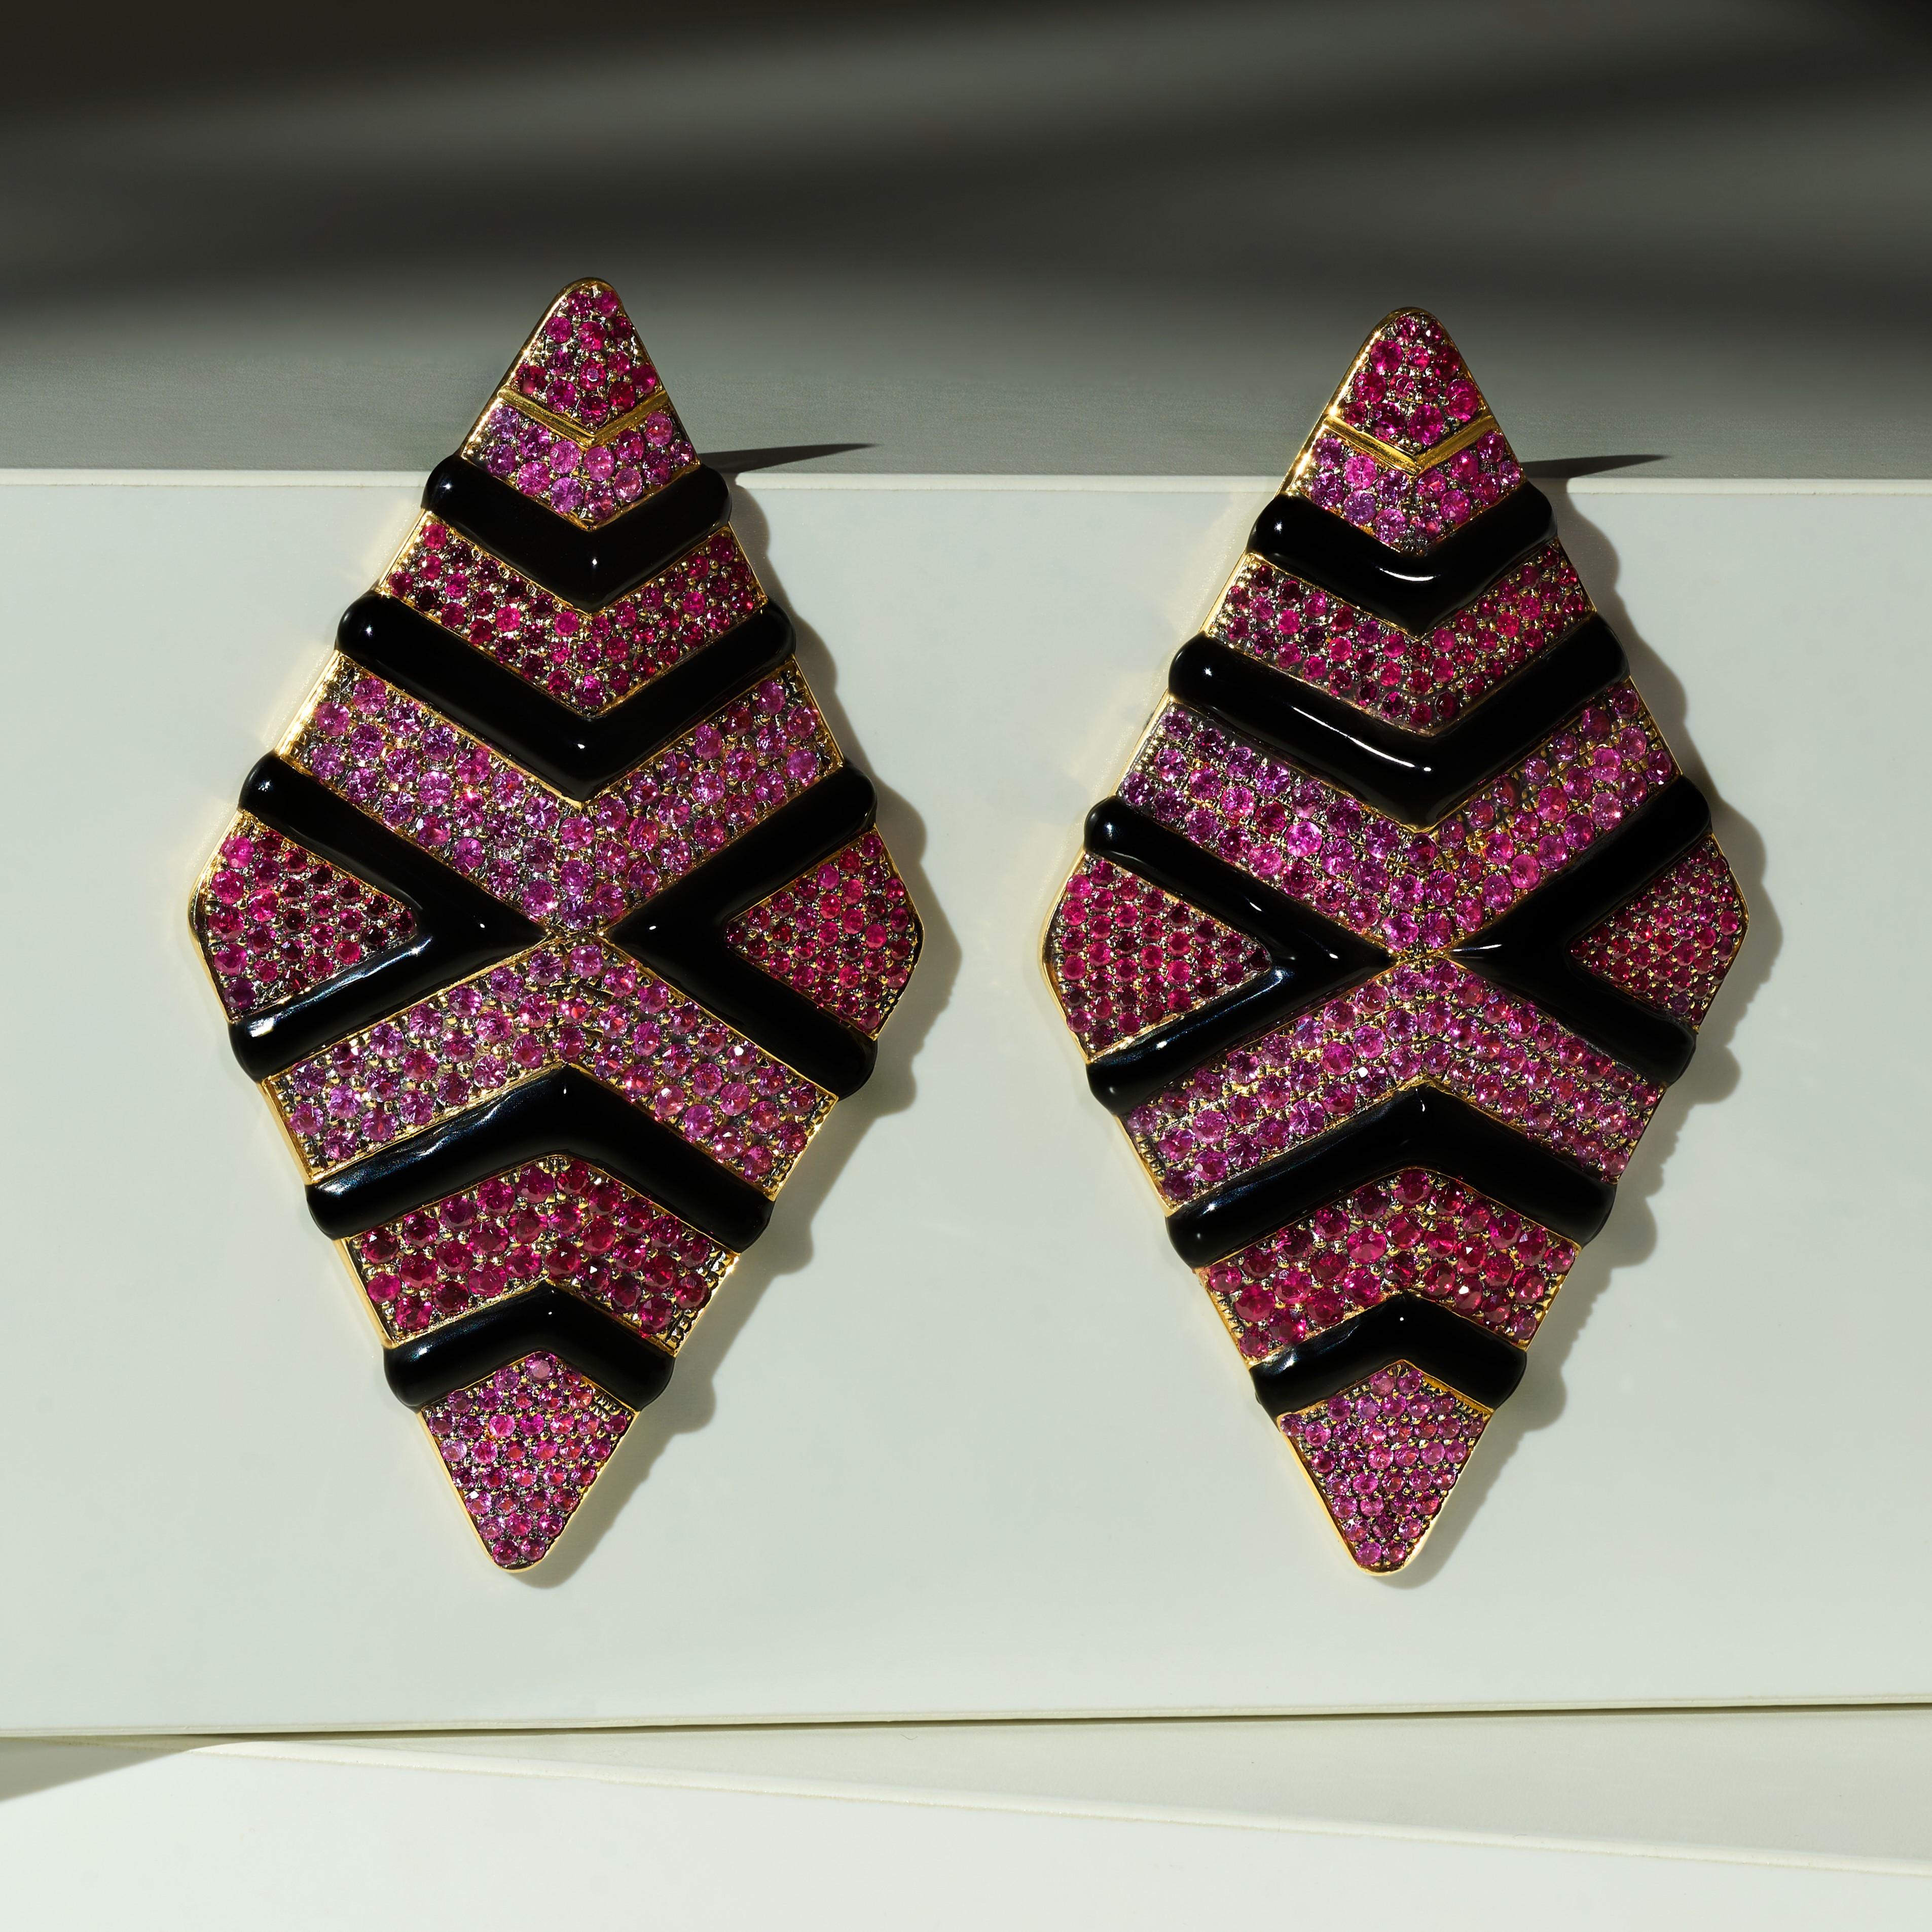 Einzigartige Tropfenohrringe von Rosior Portugal in Gelbgold und schwarzer Keramik mit:
- 297 Rubine mit einem Gewicht von 2,58 ct;
- 282 rosa Saphire mit einem Gewicht von 3,23 ct.
Gewicht in 19,2k Gold: 19,9 g.
Diese Ohrringe sind neu und ein